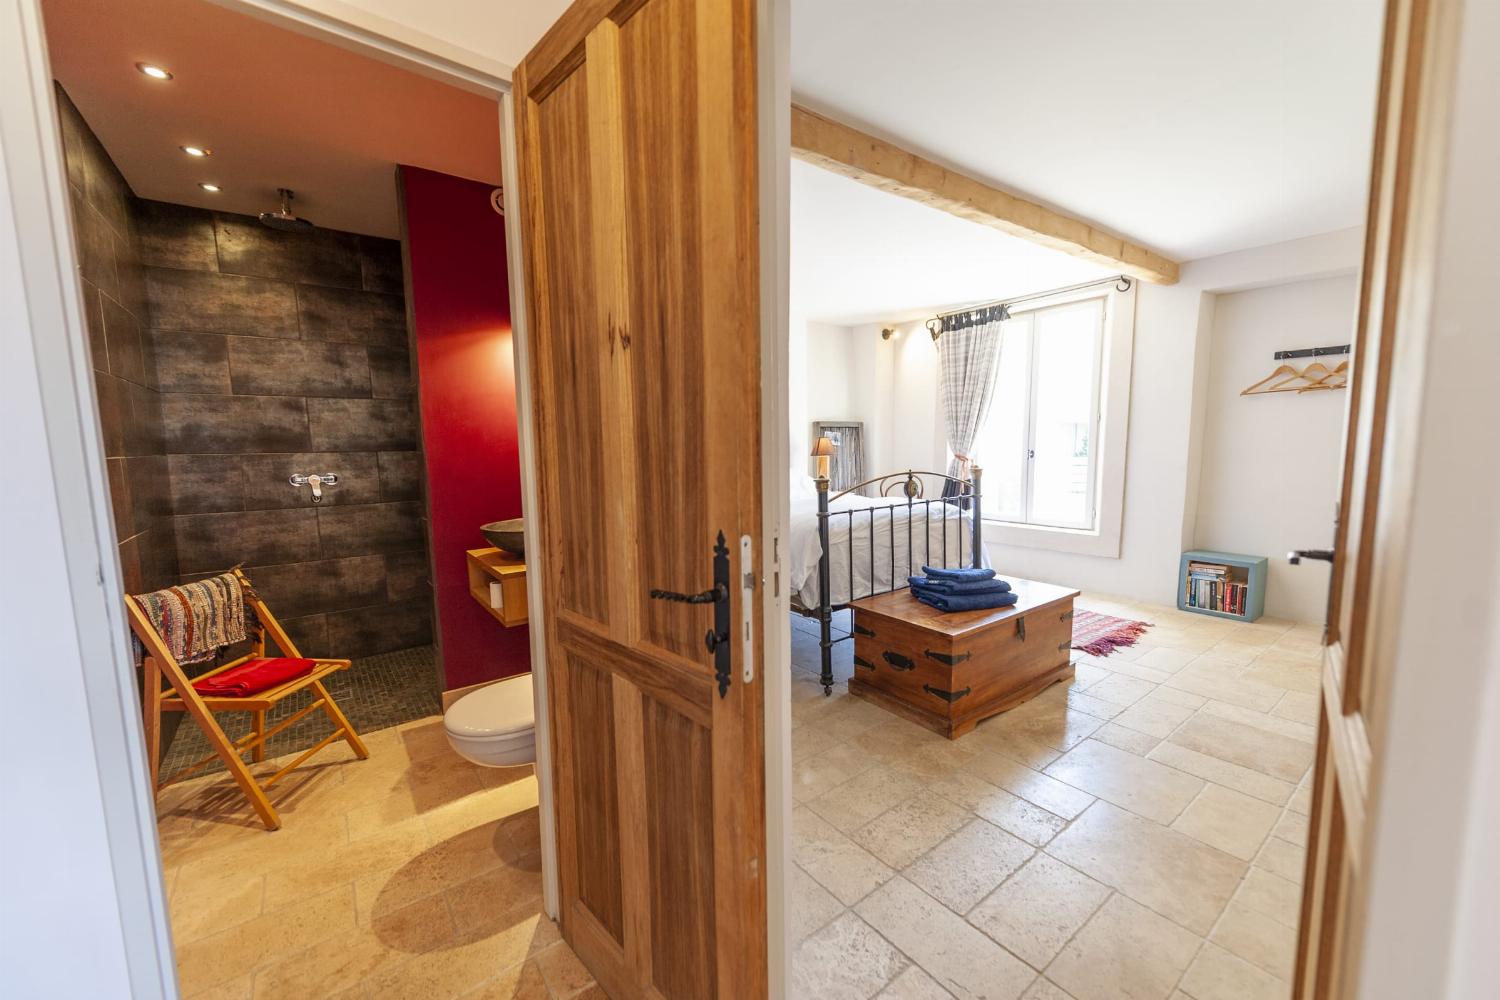 Salle de bain et chambre | Maison de vacances en Occitanie